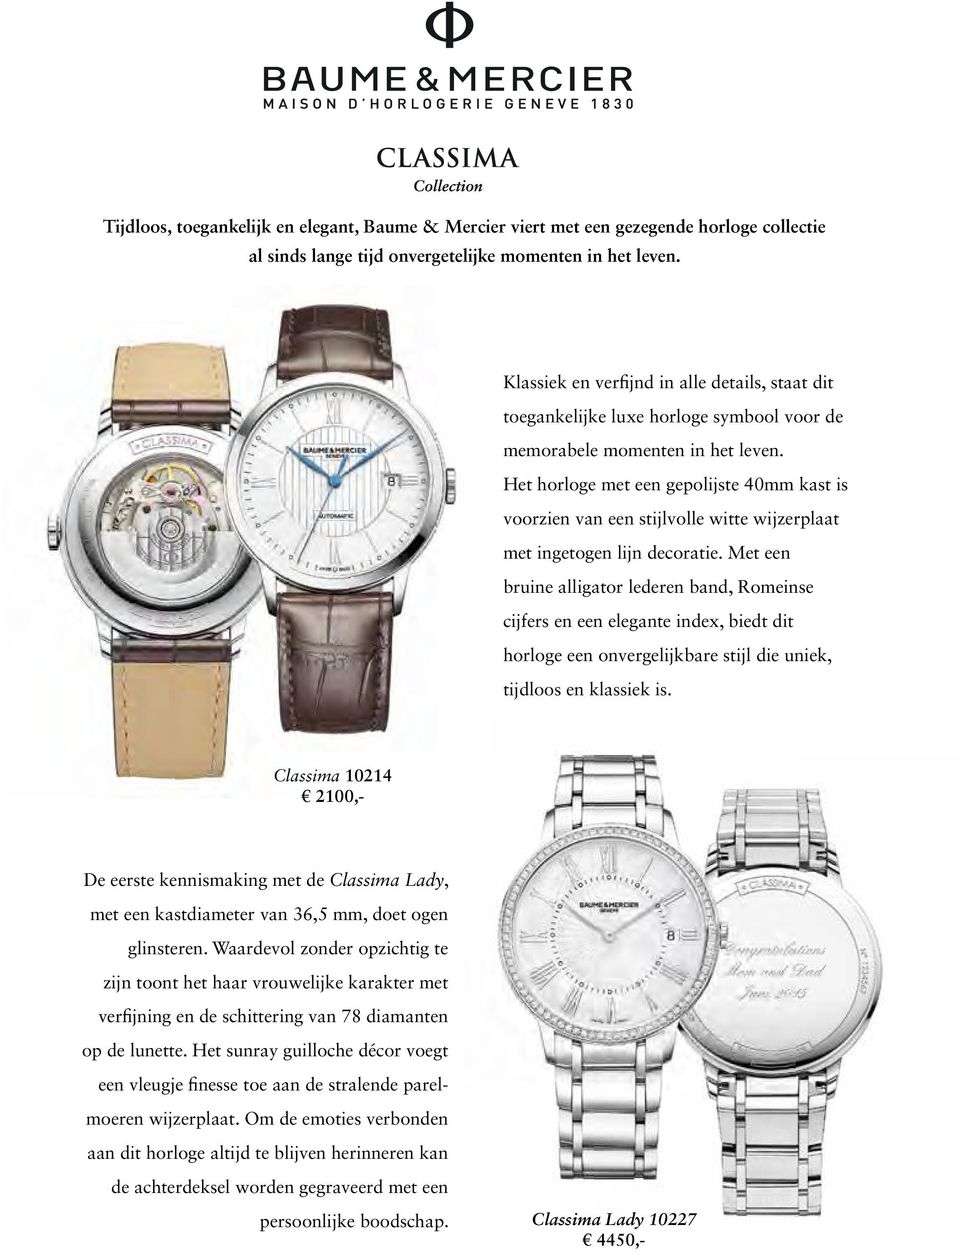 Het horloge met een gepolijste 40mm kast is voorzien van een stijlvolle witte wijzerplaat met ingetogen lijn decoratie.